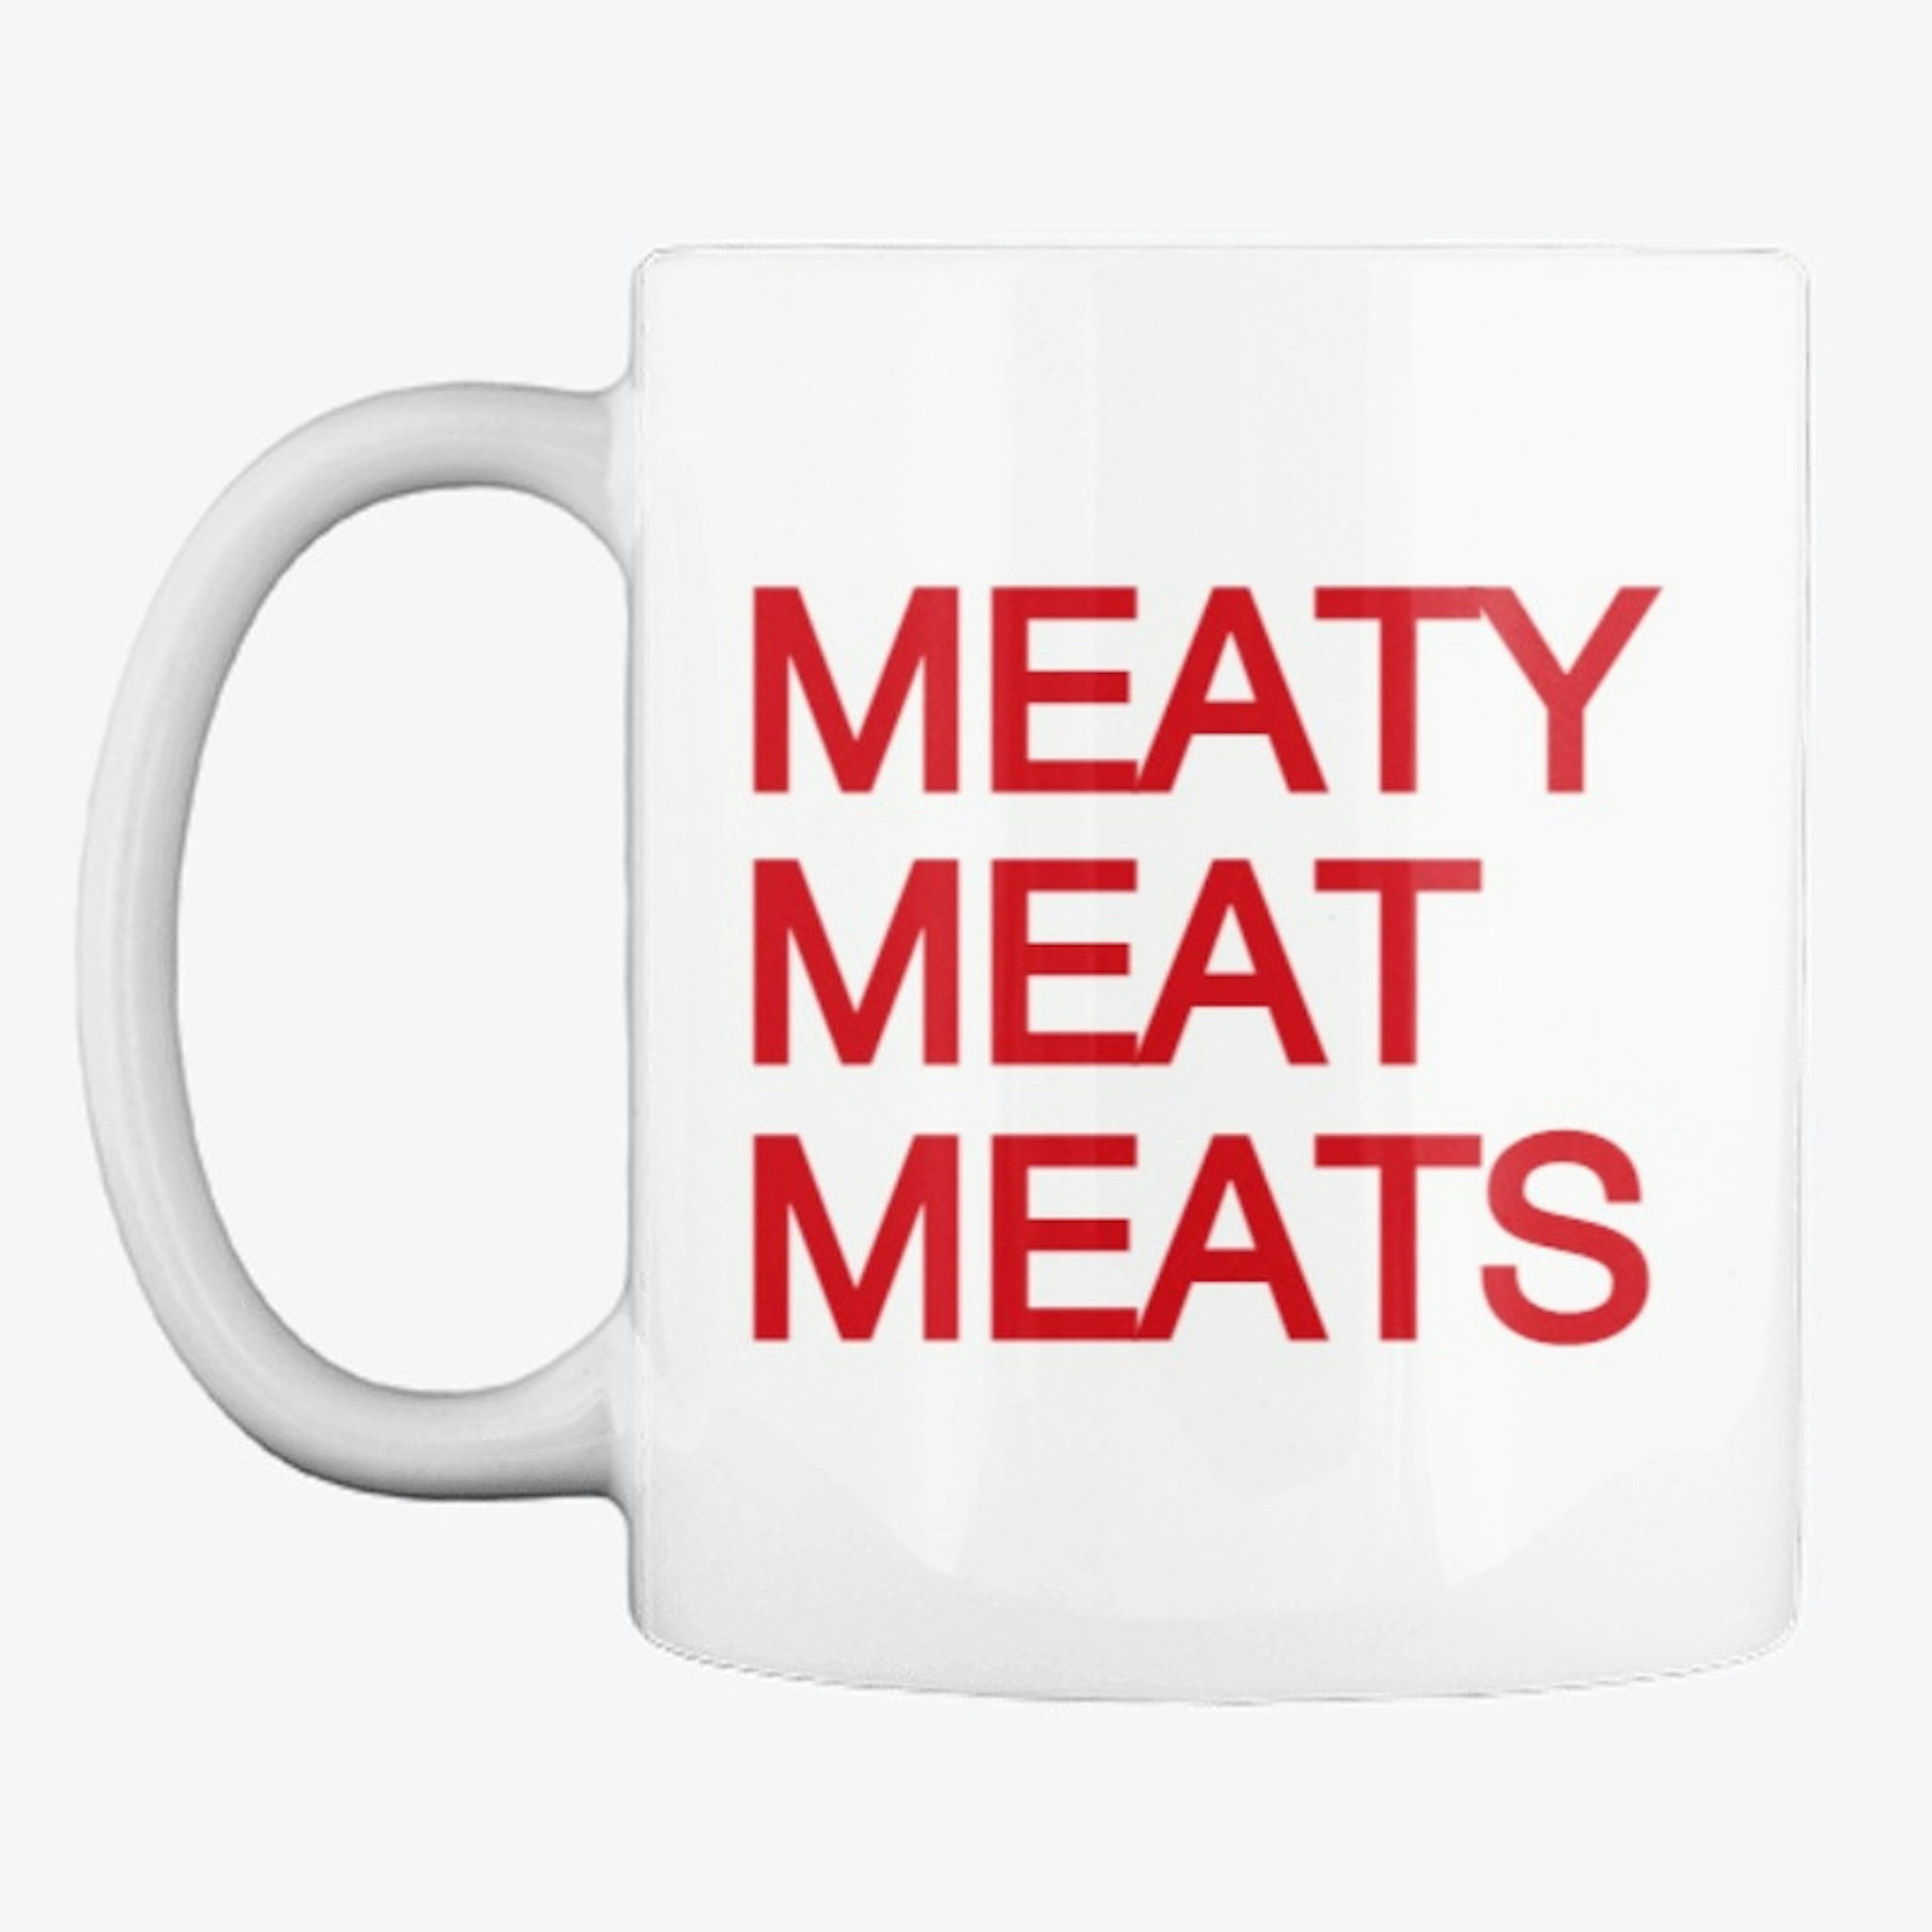 MEATY MEAT MEATS